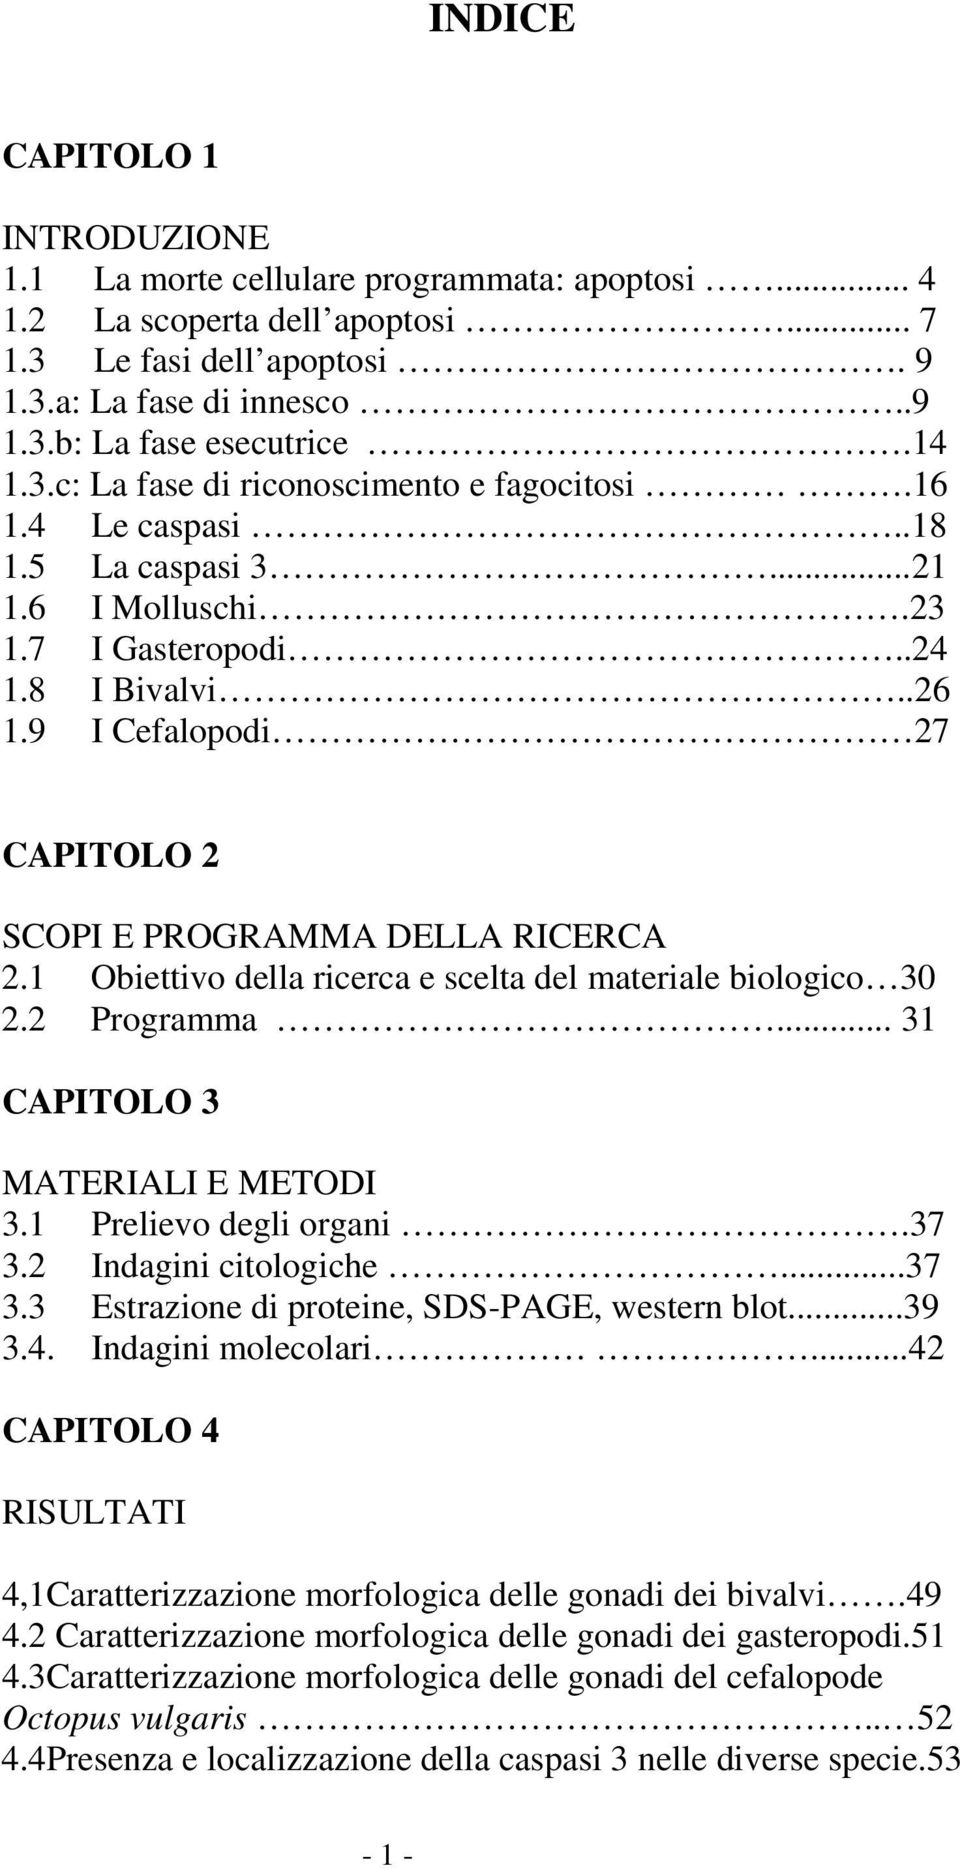 9 I Cefalopodi 27 CAPITOLO 2 SCOPI E PROGRAMMA DELLA RICERCA 2.1 Obiettivo della ricerca e scelta del materiale biologico 30 2.2 Programma... 31 CAPITOLO 3 MATERIALI E METODI 3.